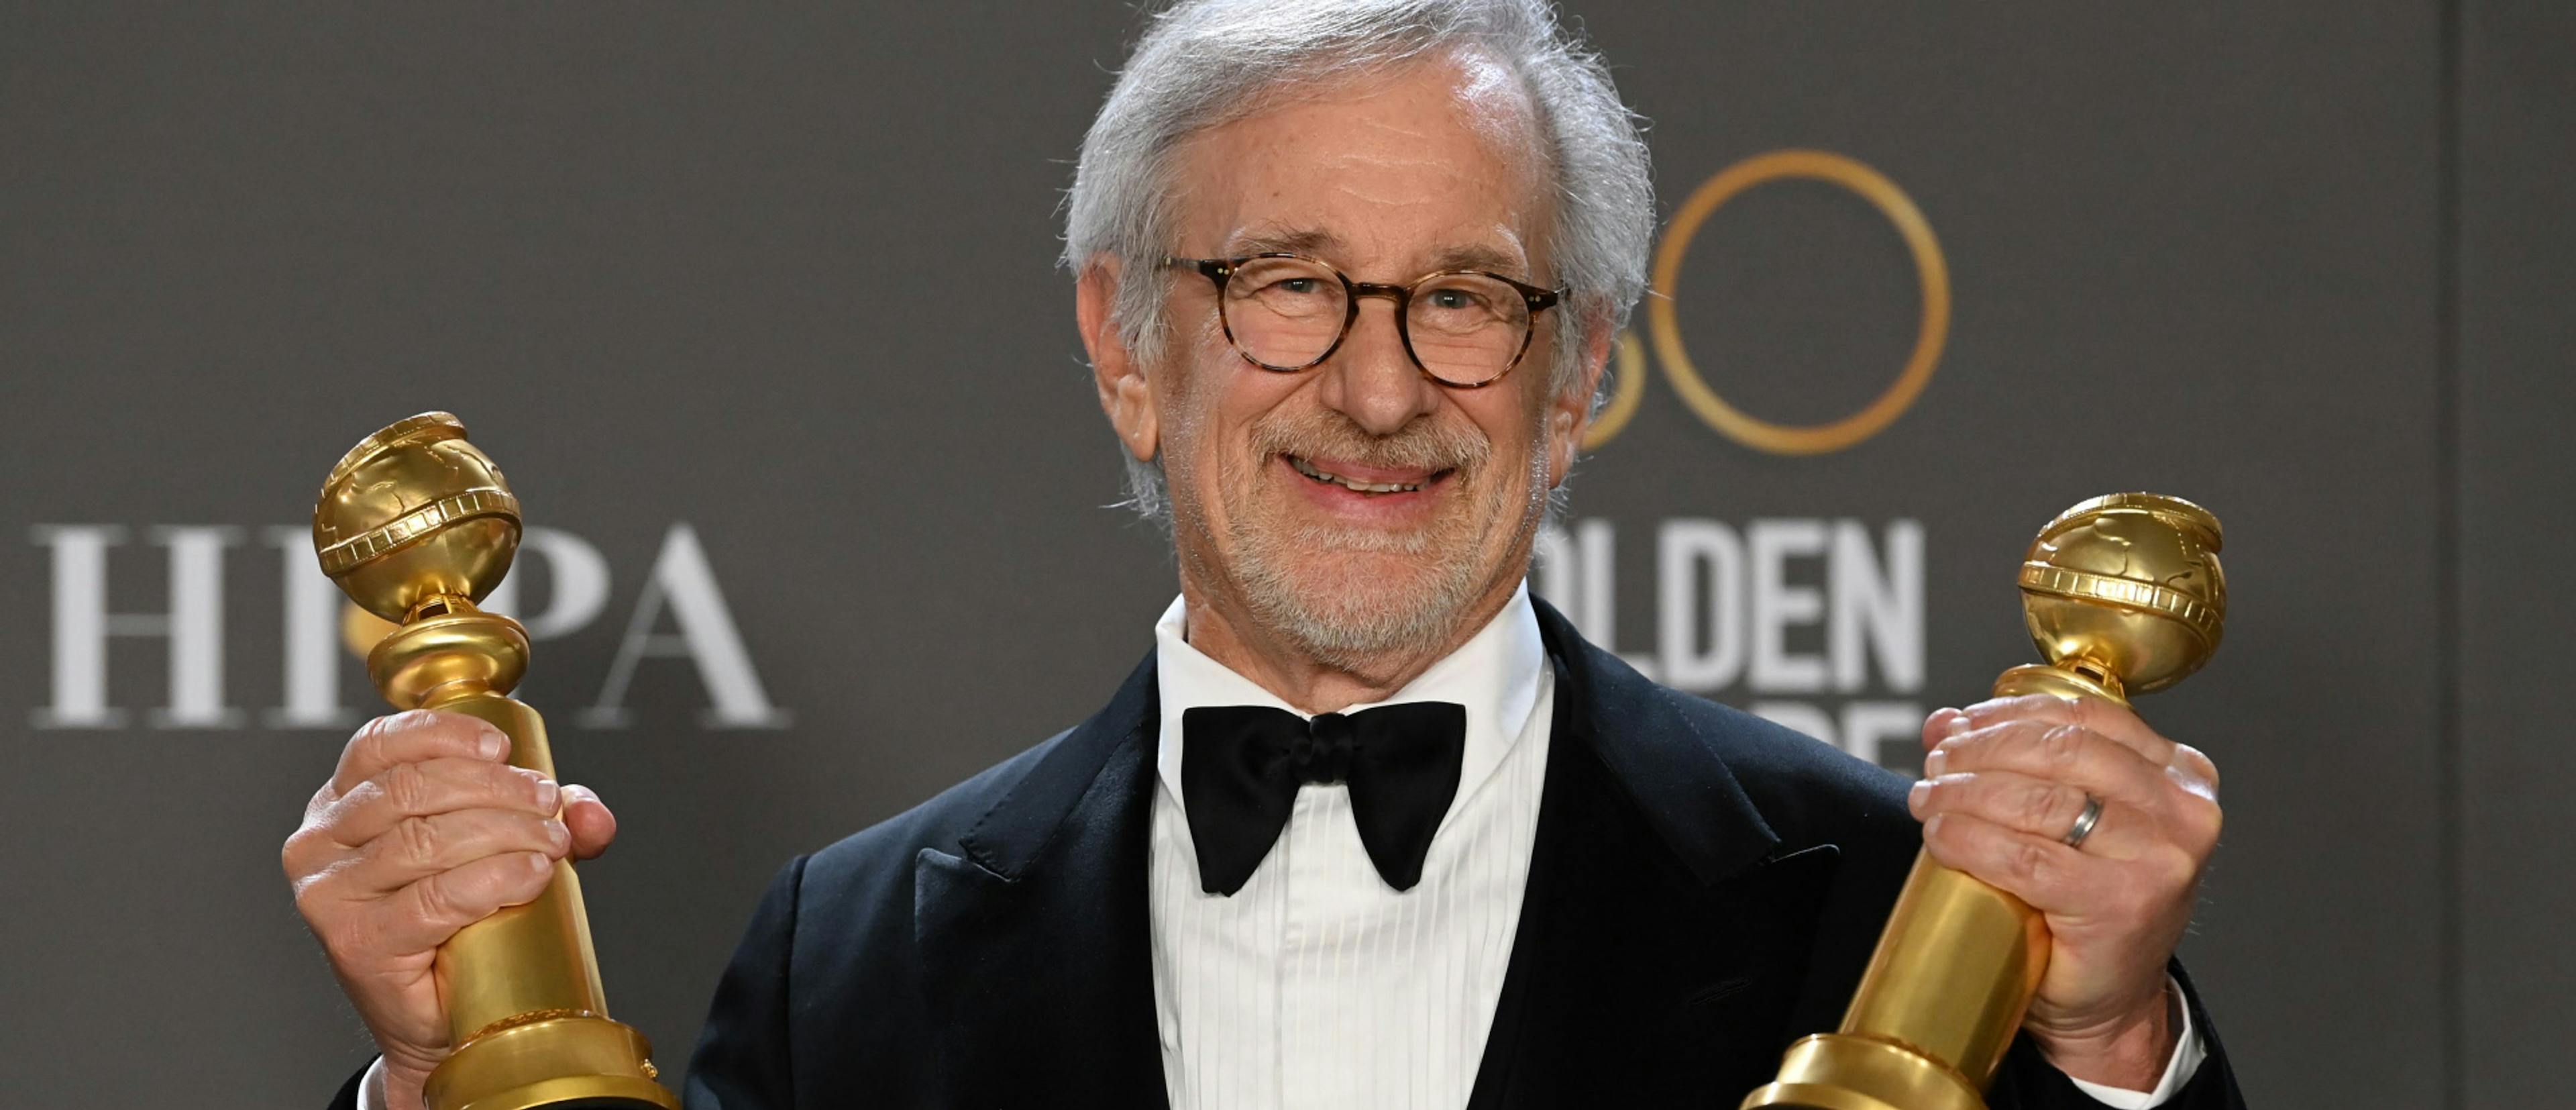 El director Steven Spielberg posa con los Globos de Oro a Mejor Drama y Mejor Dirección por 'Los Fabelman'